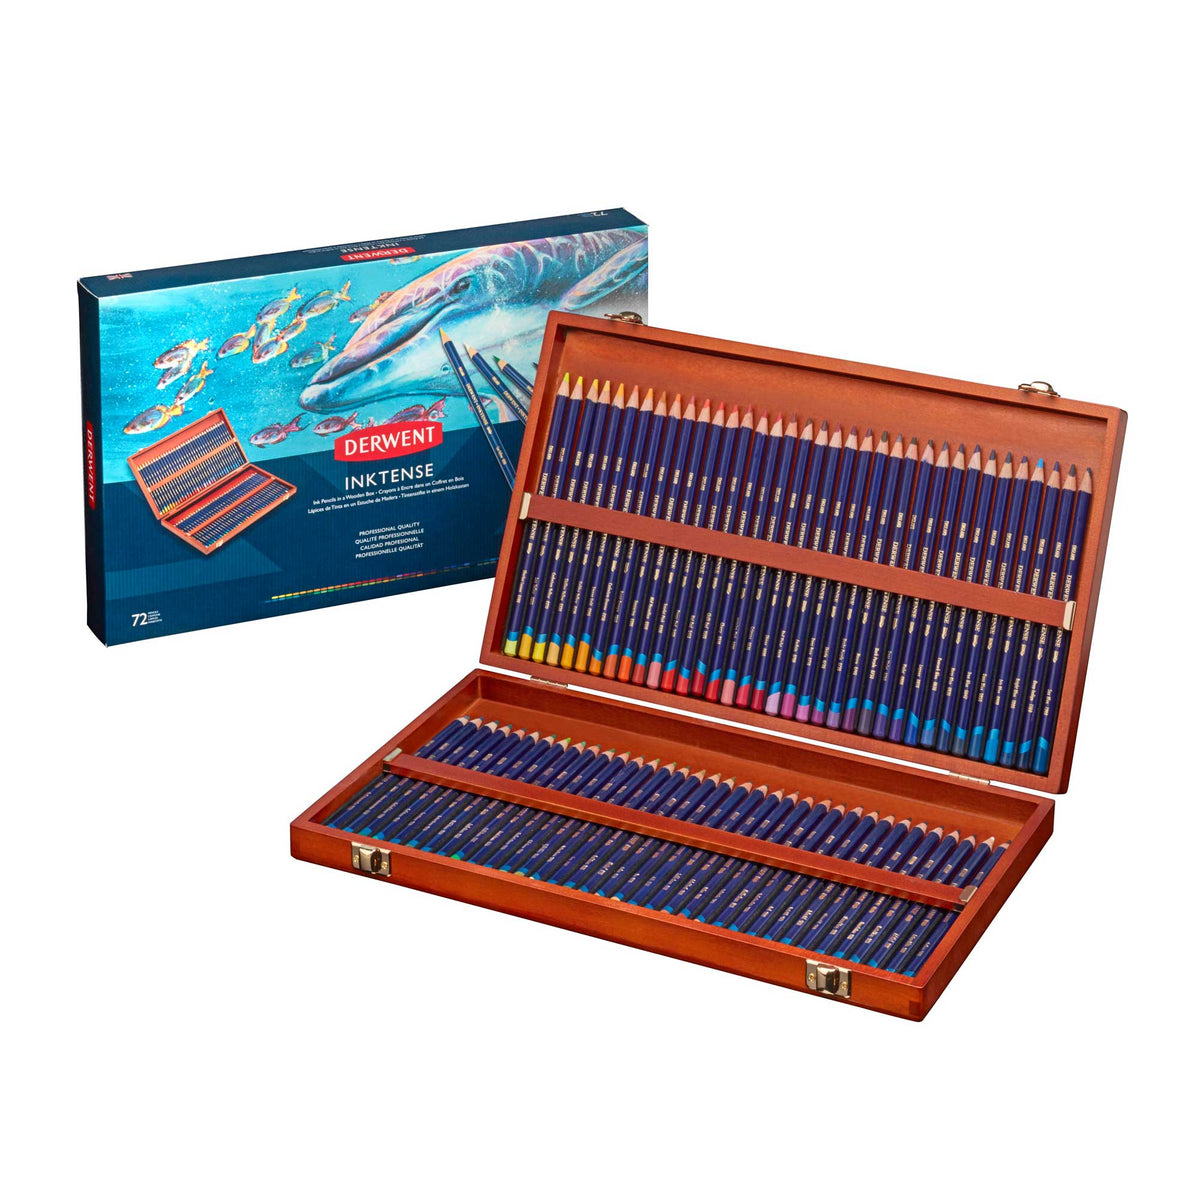 Derwent Inktense Pencils Wooden Box of 72 - FREE Isomars A1 Art Storage Bag